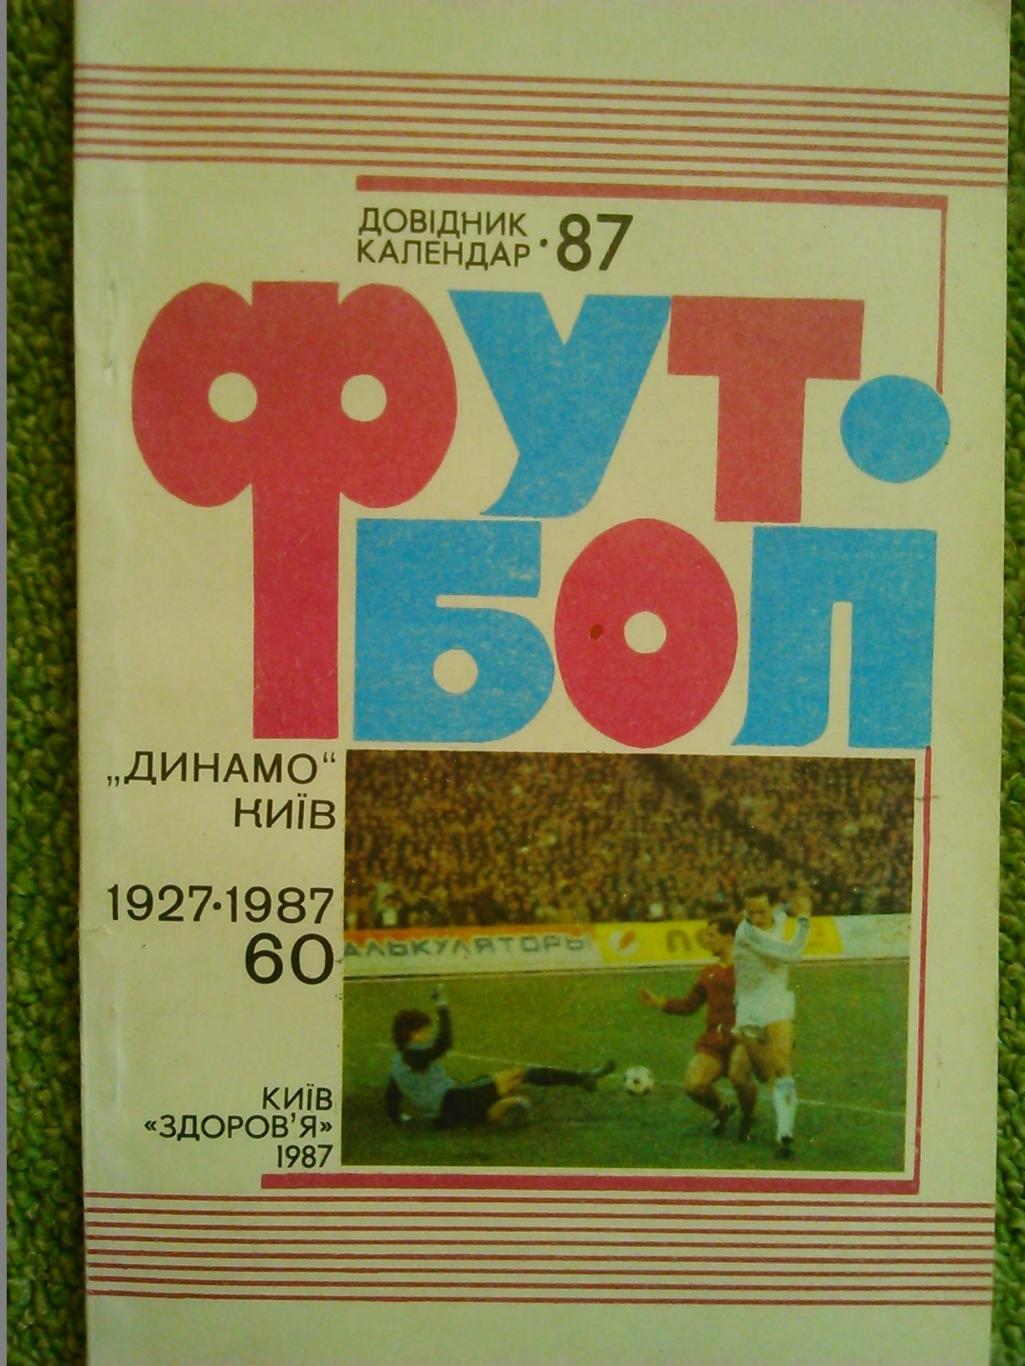 Футбол 1987.ДИНАМОКиїв. 1927-1987 60 років. Оптом скидки до 44%!